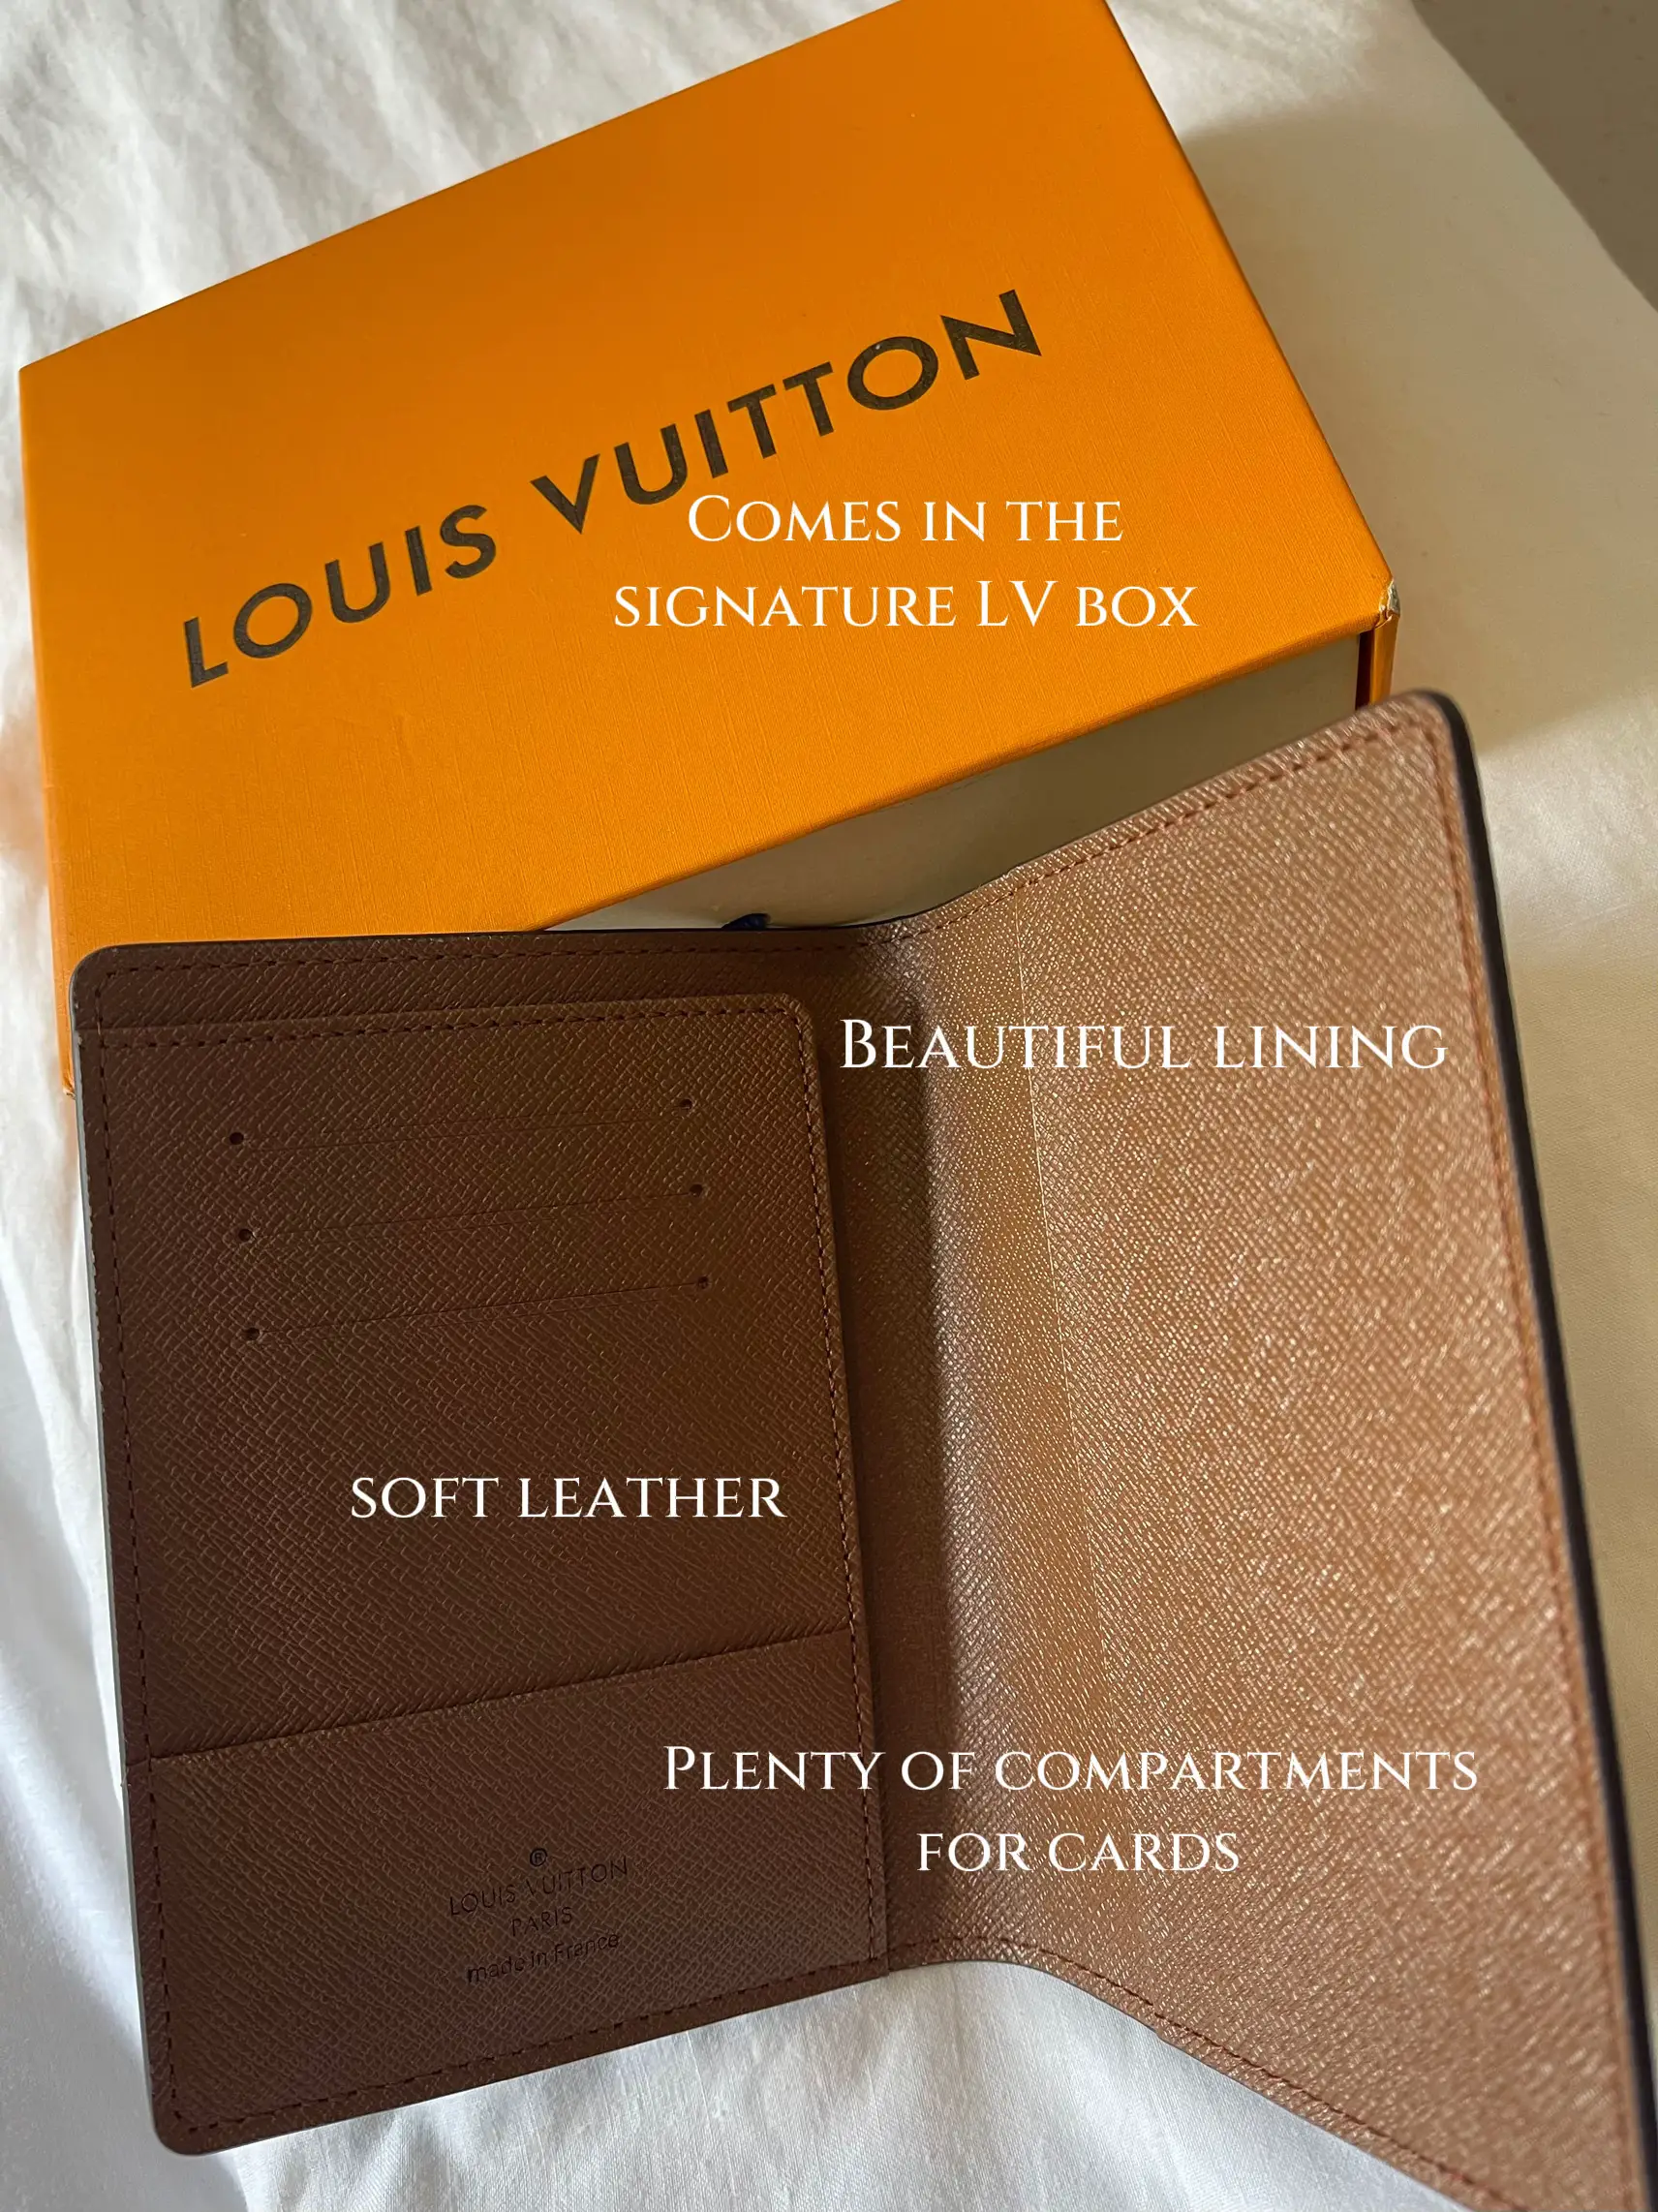 Louis Vuitton Passport Holder // Review // Wear & Tear 